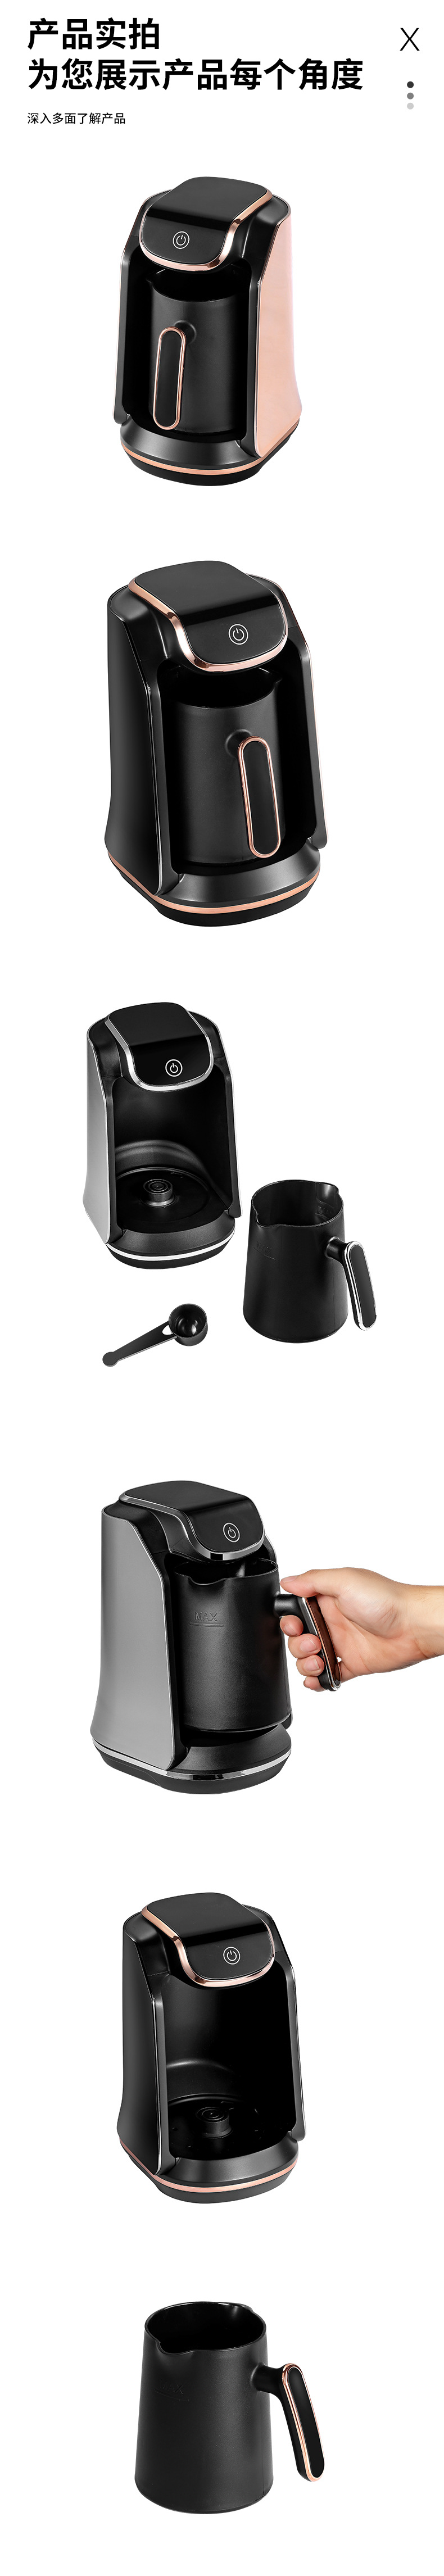 跨境咖啡机 热咖啡牛奶机 便携式烧水煮茶器 煮咖啡壶咖啡杯详情9